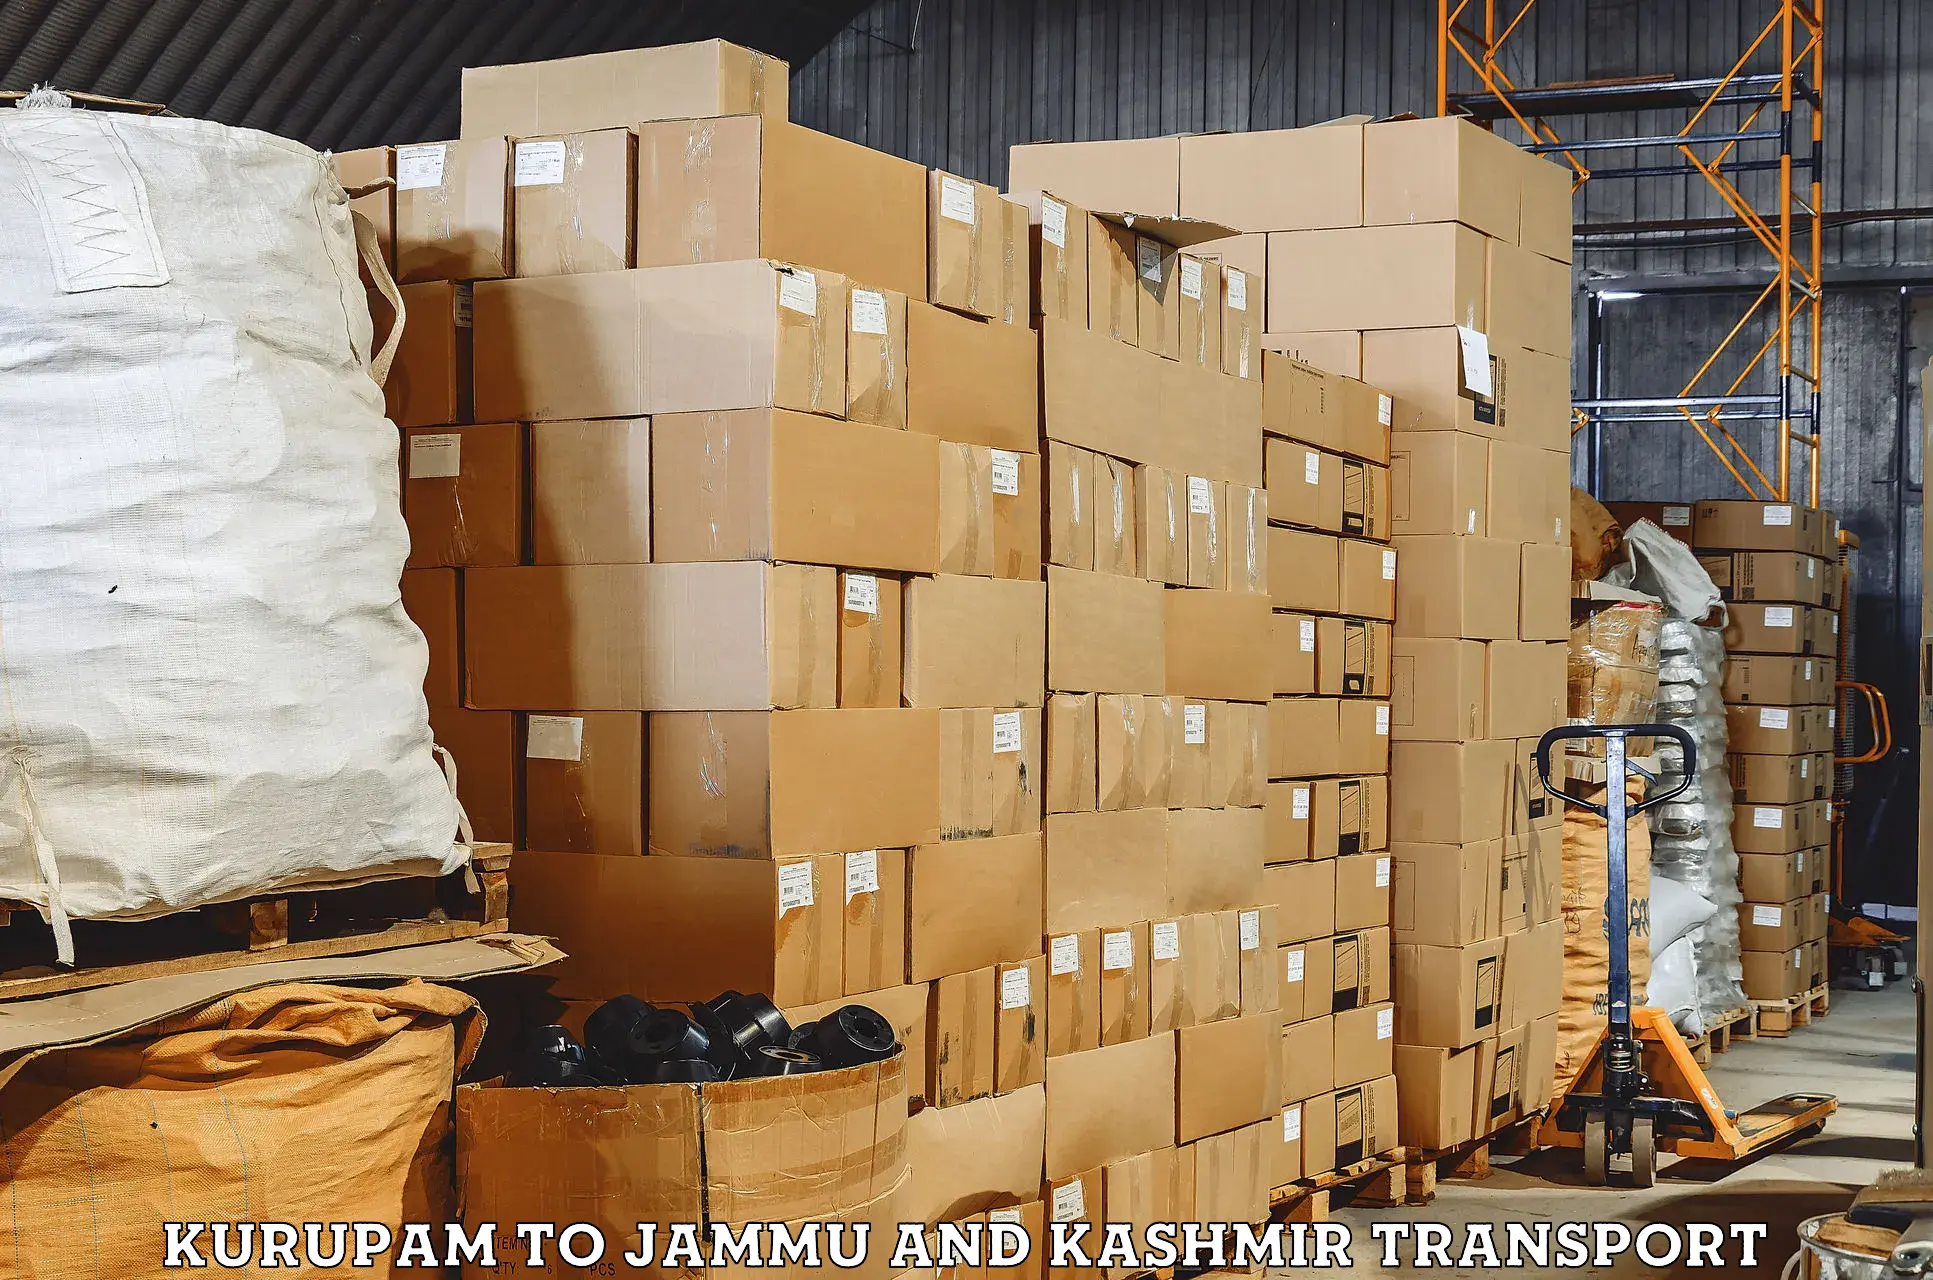 Container transport service Kurupam to Jammu